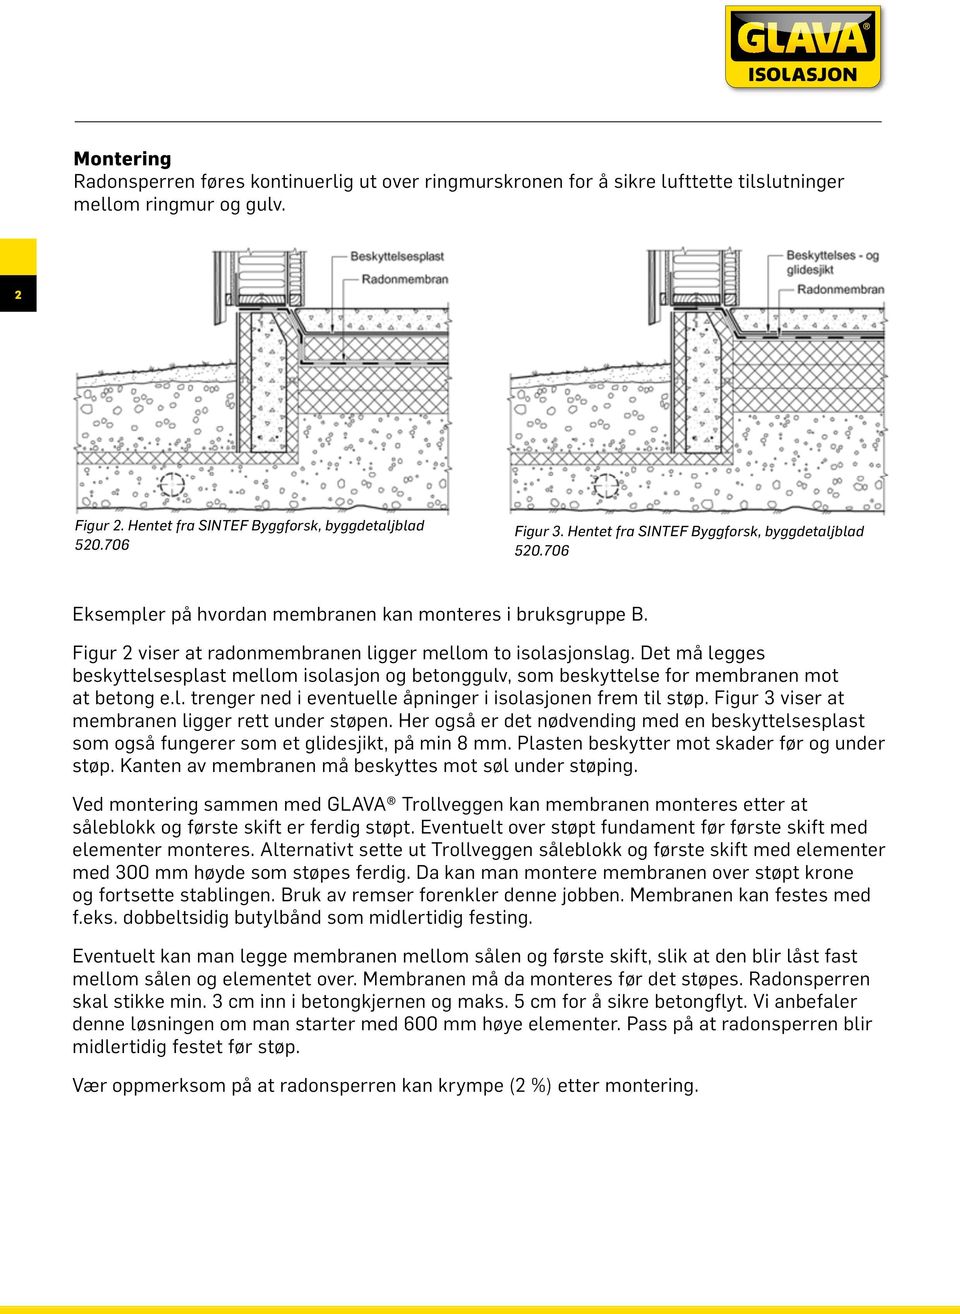 Det må legges beskyttelsesplast mellom isolasjon og betonggulv, som beskyttelse for membranen mot at betong e.l. trenger ned i eventuelle åpninger i isolasjonen frem til støp.